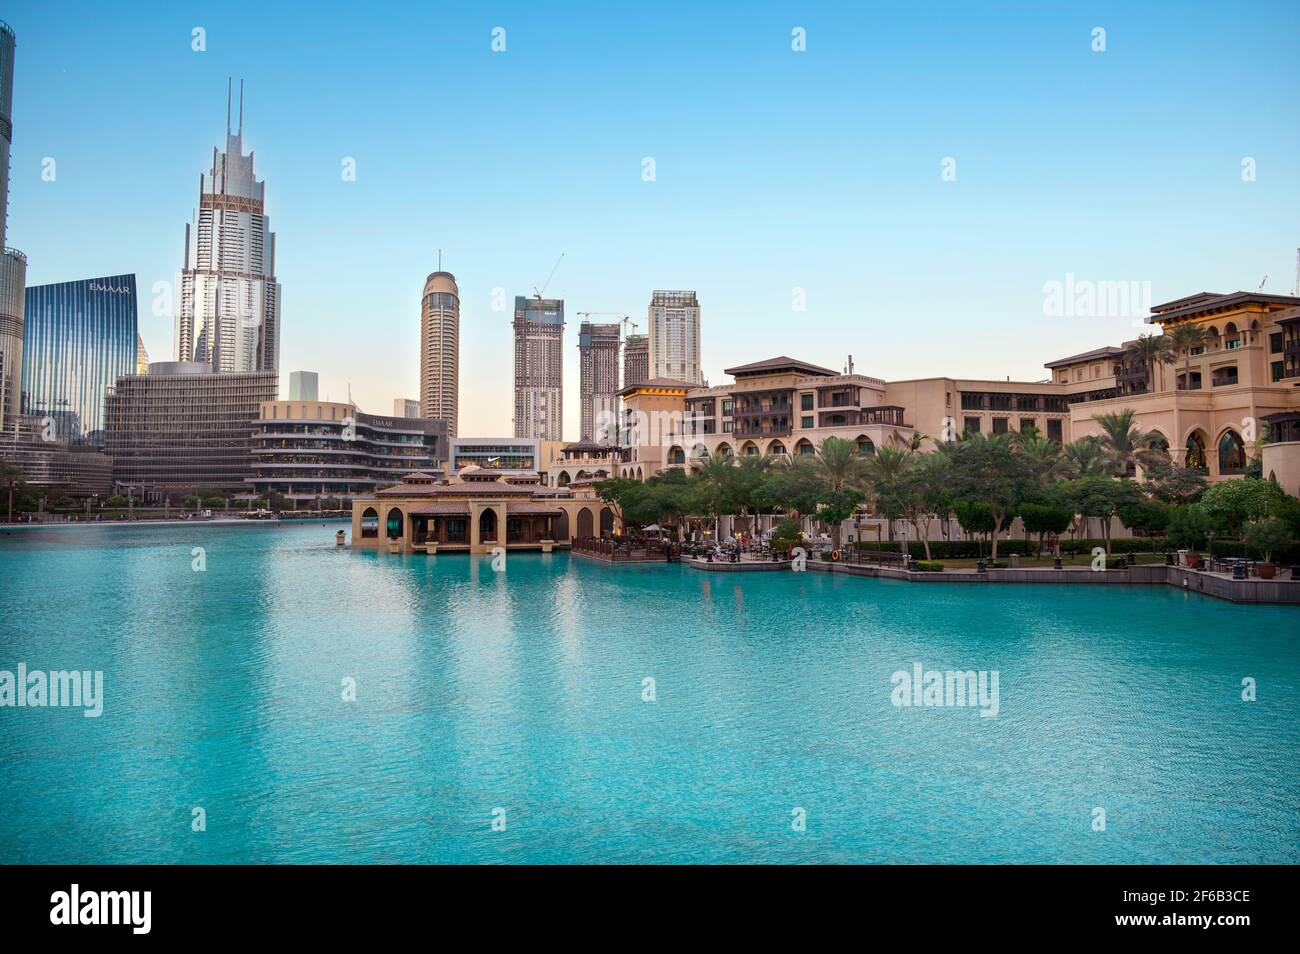 JANUAR 2021, Dubai, VAE. Wunderschöne Aussicht auf den Souk al bahar, das dubai Einkaufszentrum, Hotels und andere Gebäude, die im Erholungsboulevard-Bereich gefangen sind Stockfoto